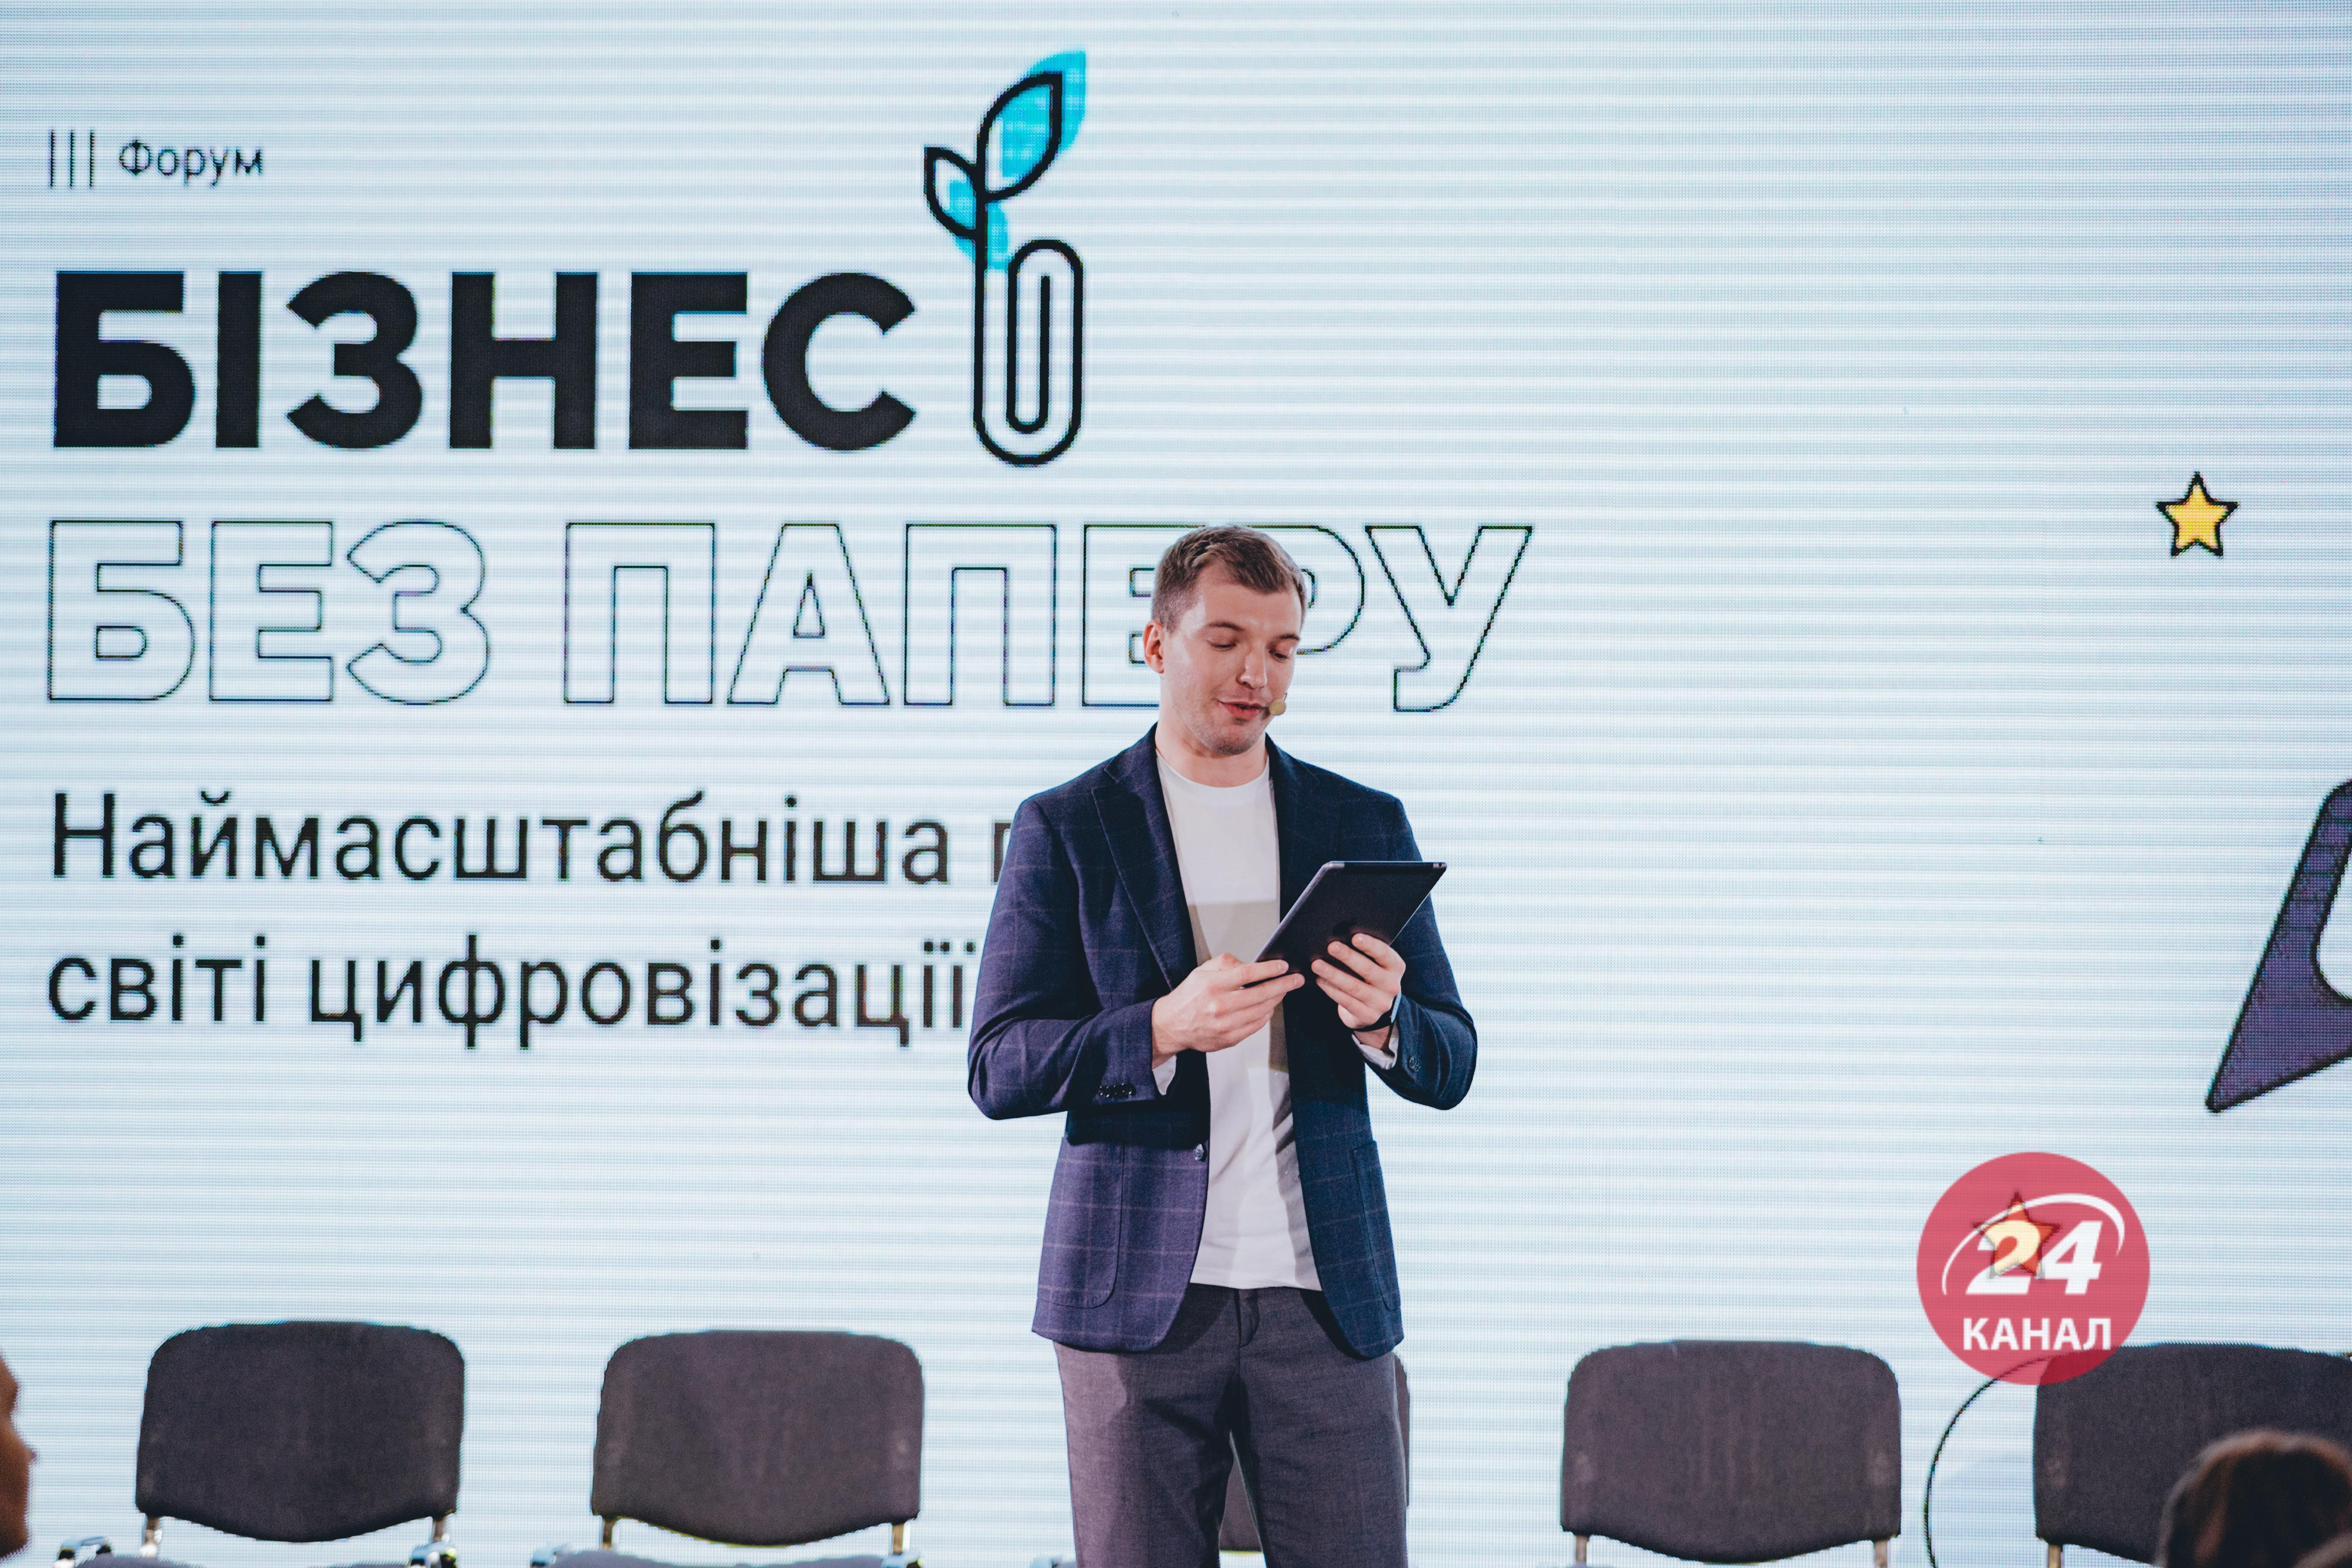 Всеукраїнський форум Бізнес без паперу відбувся 19 та 23 листопада в Києві